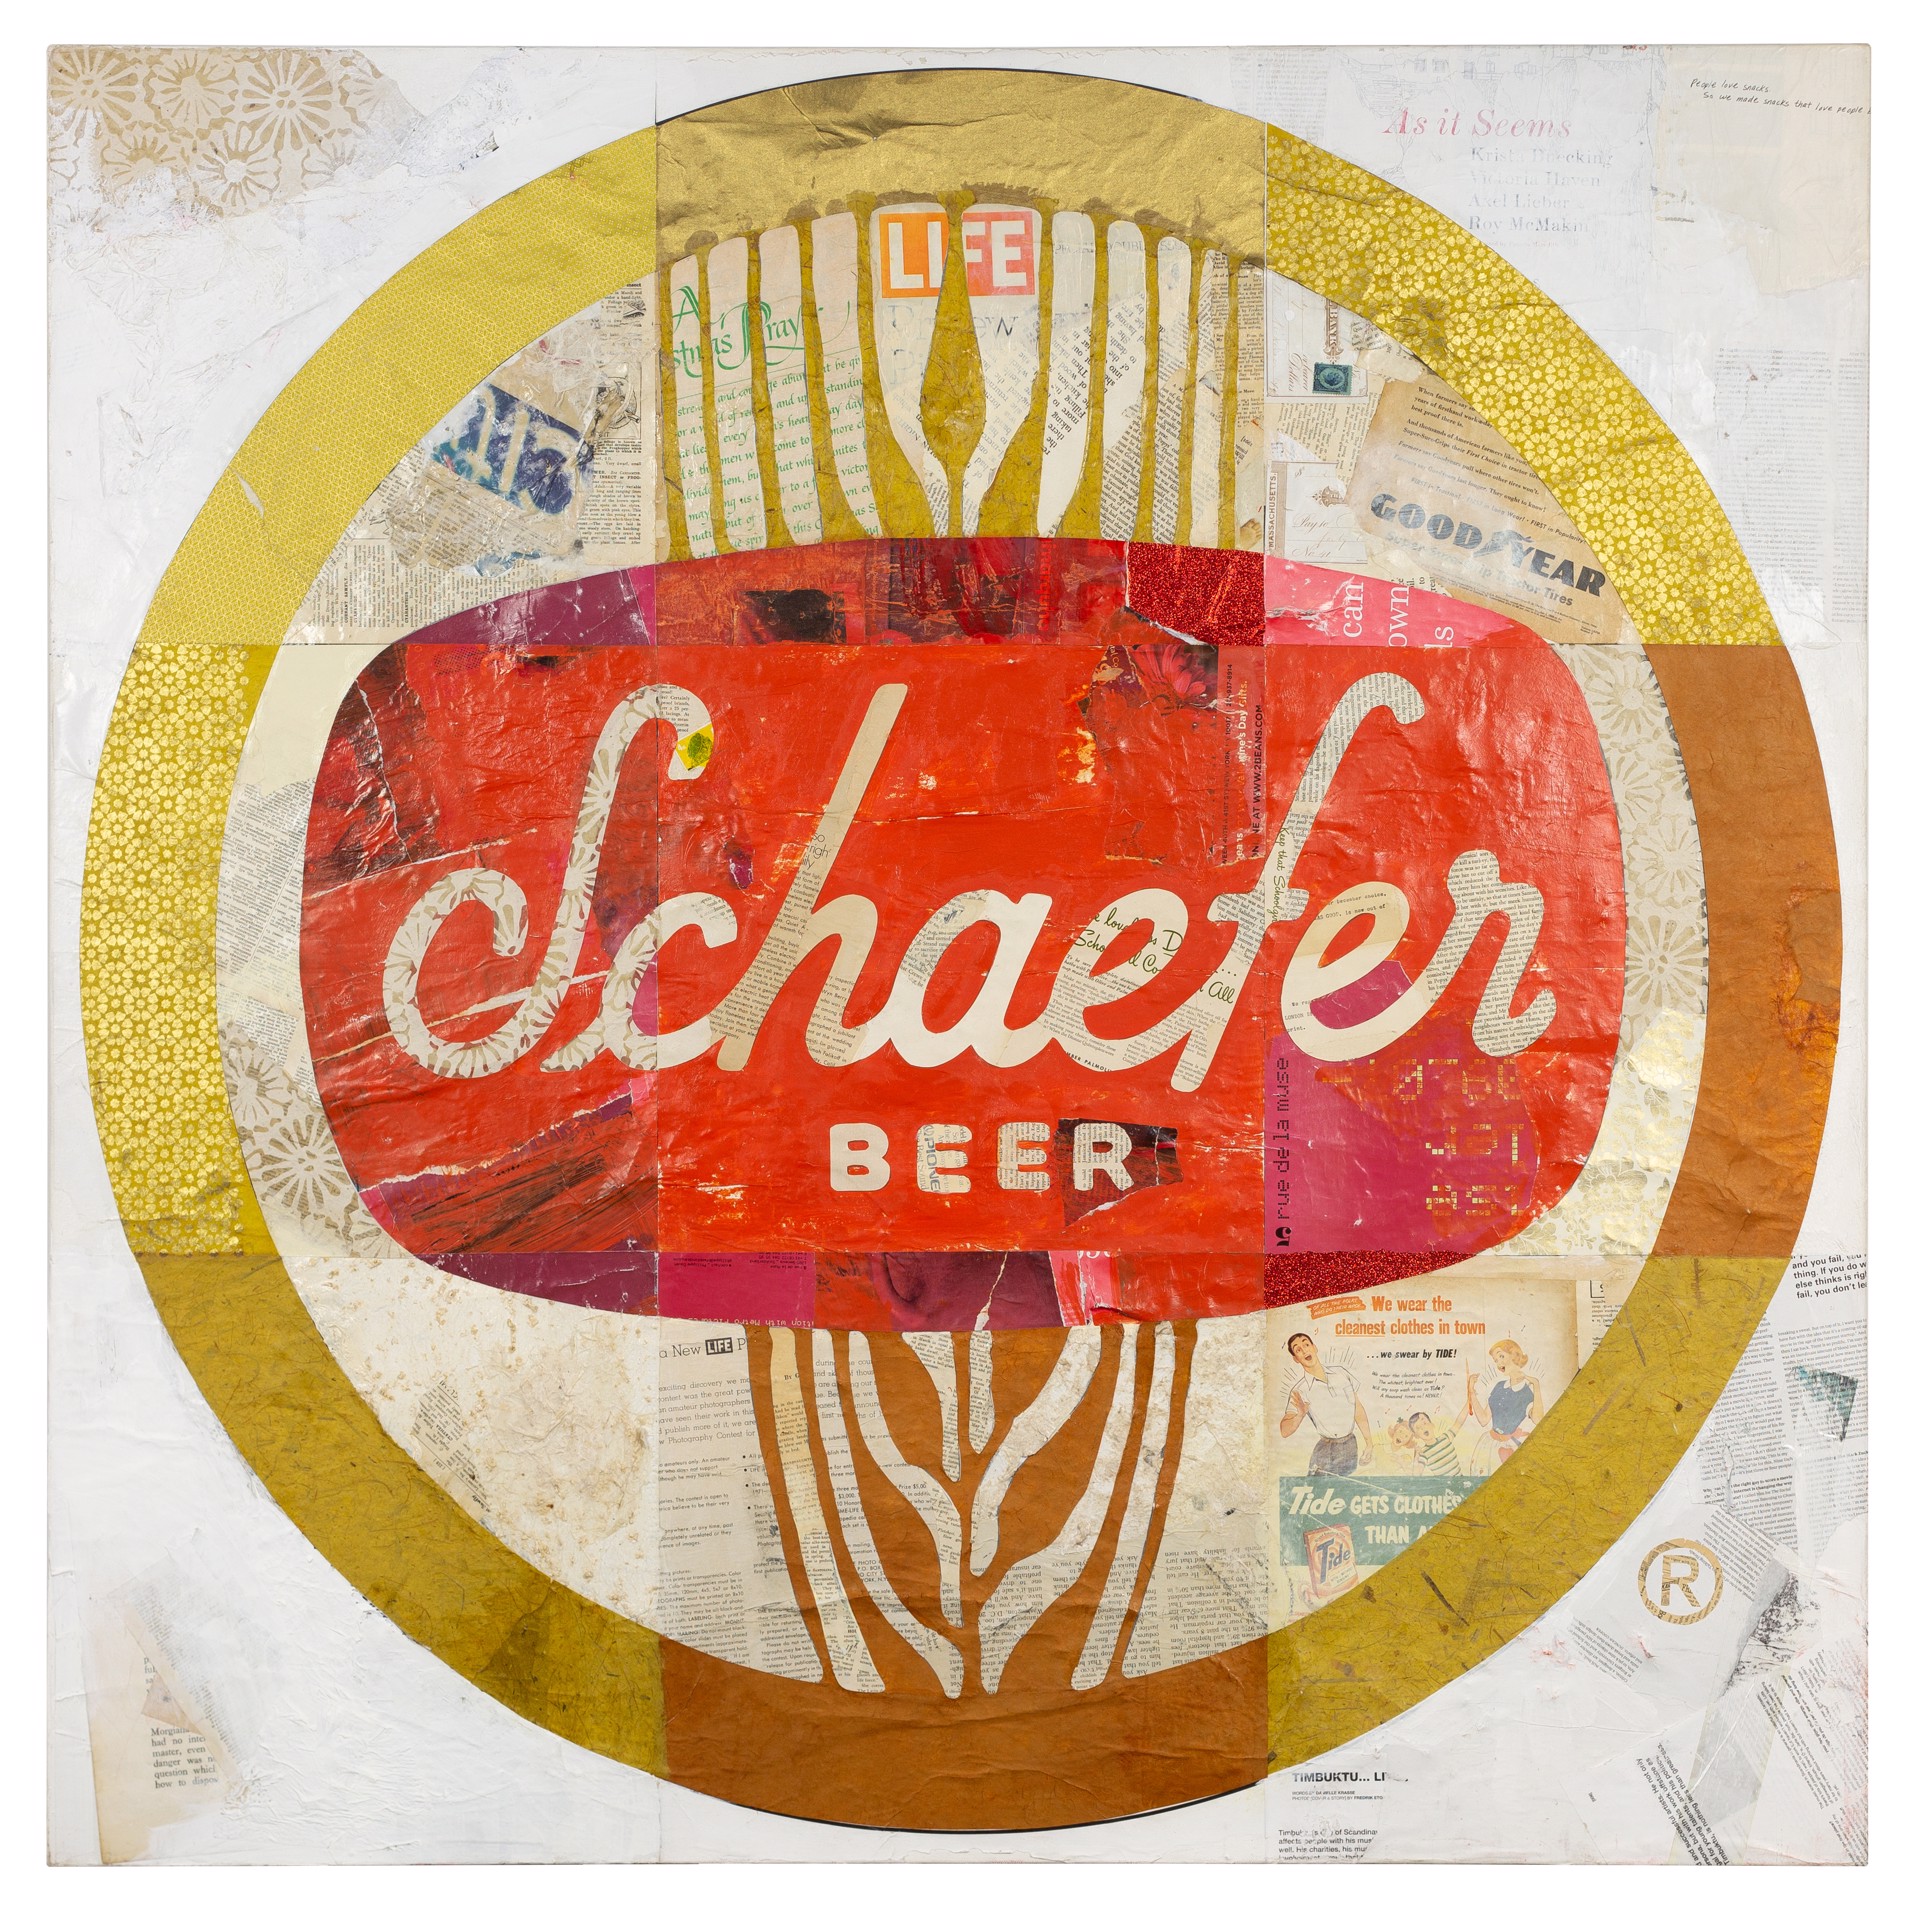 Schaefer by Cey Adams